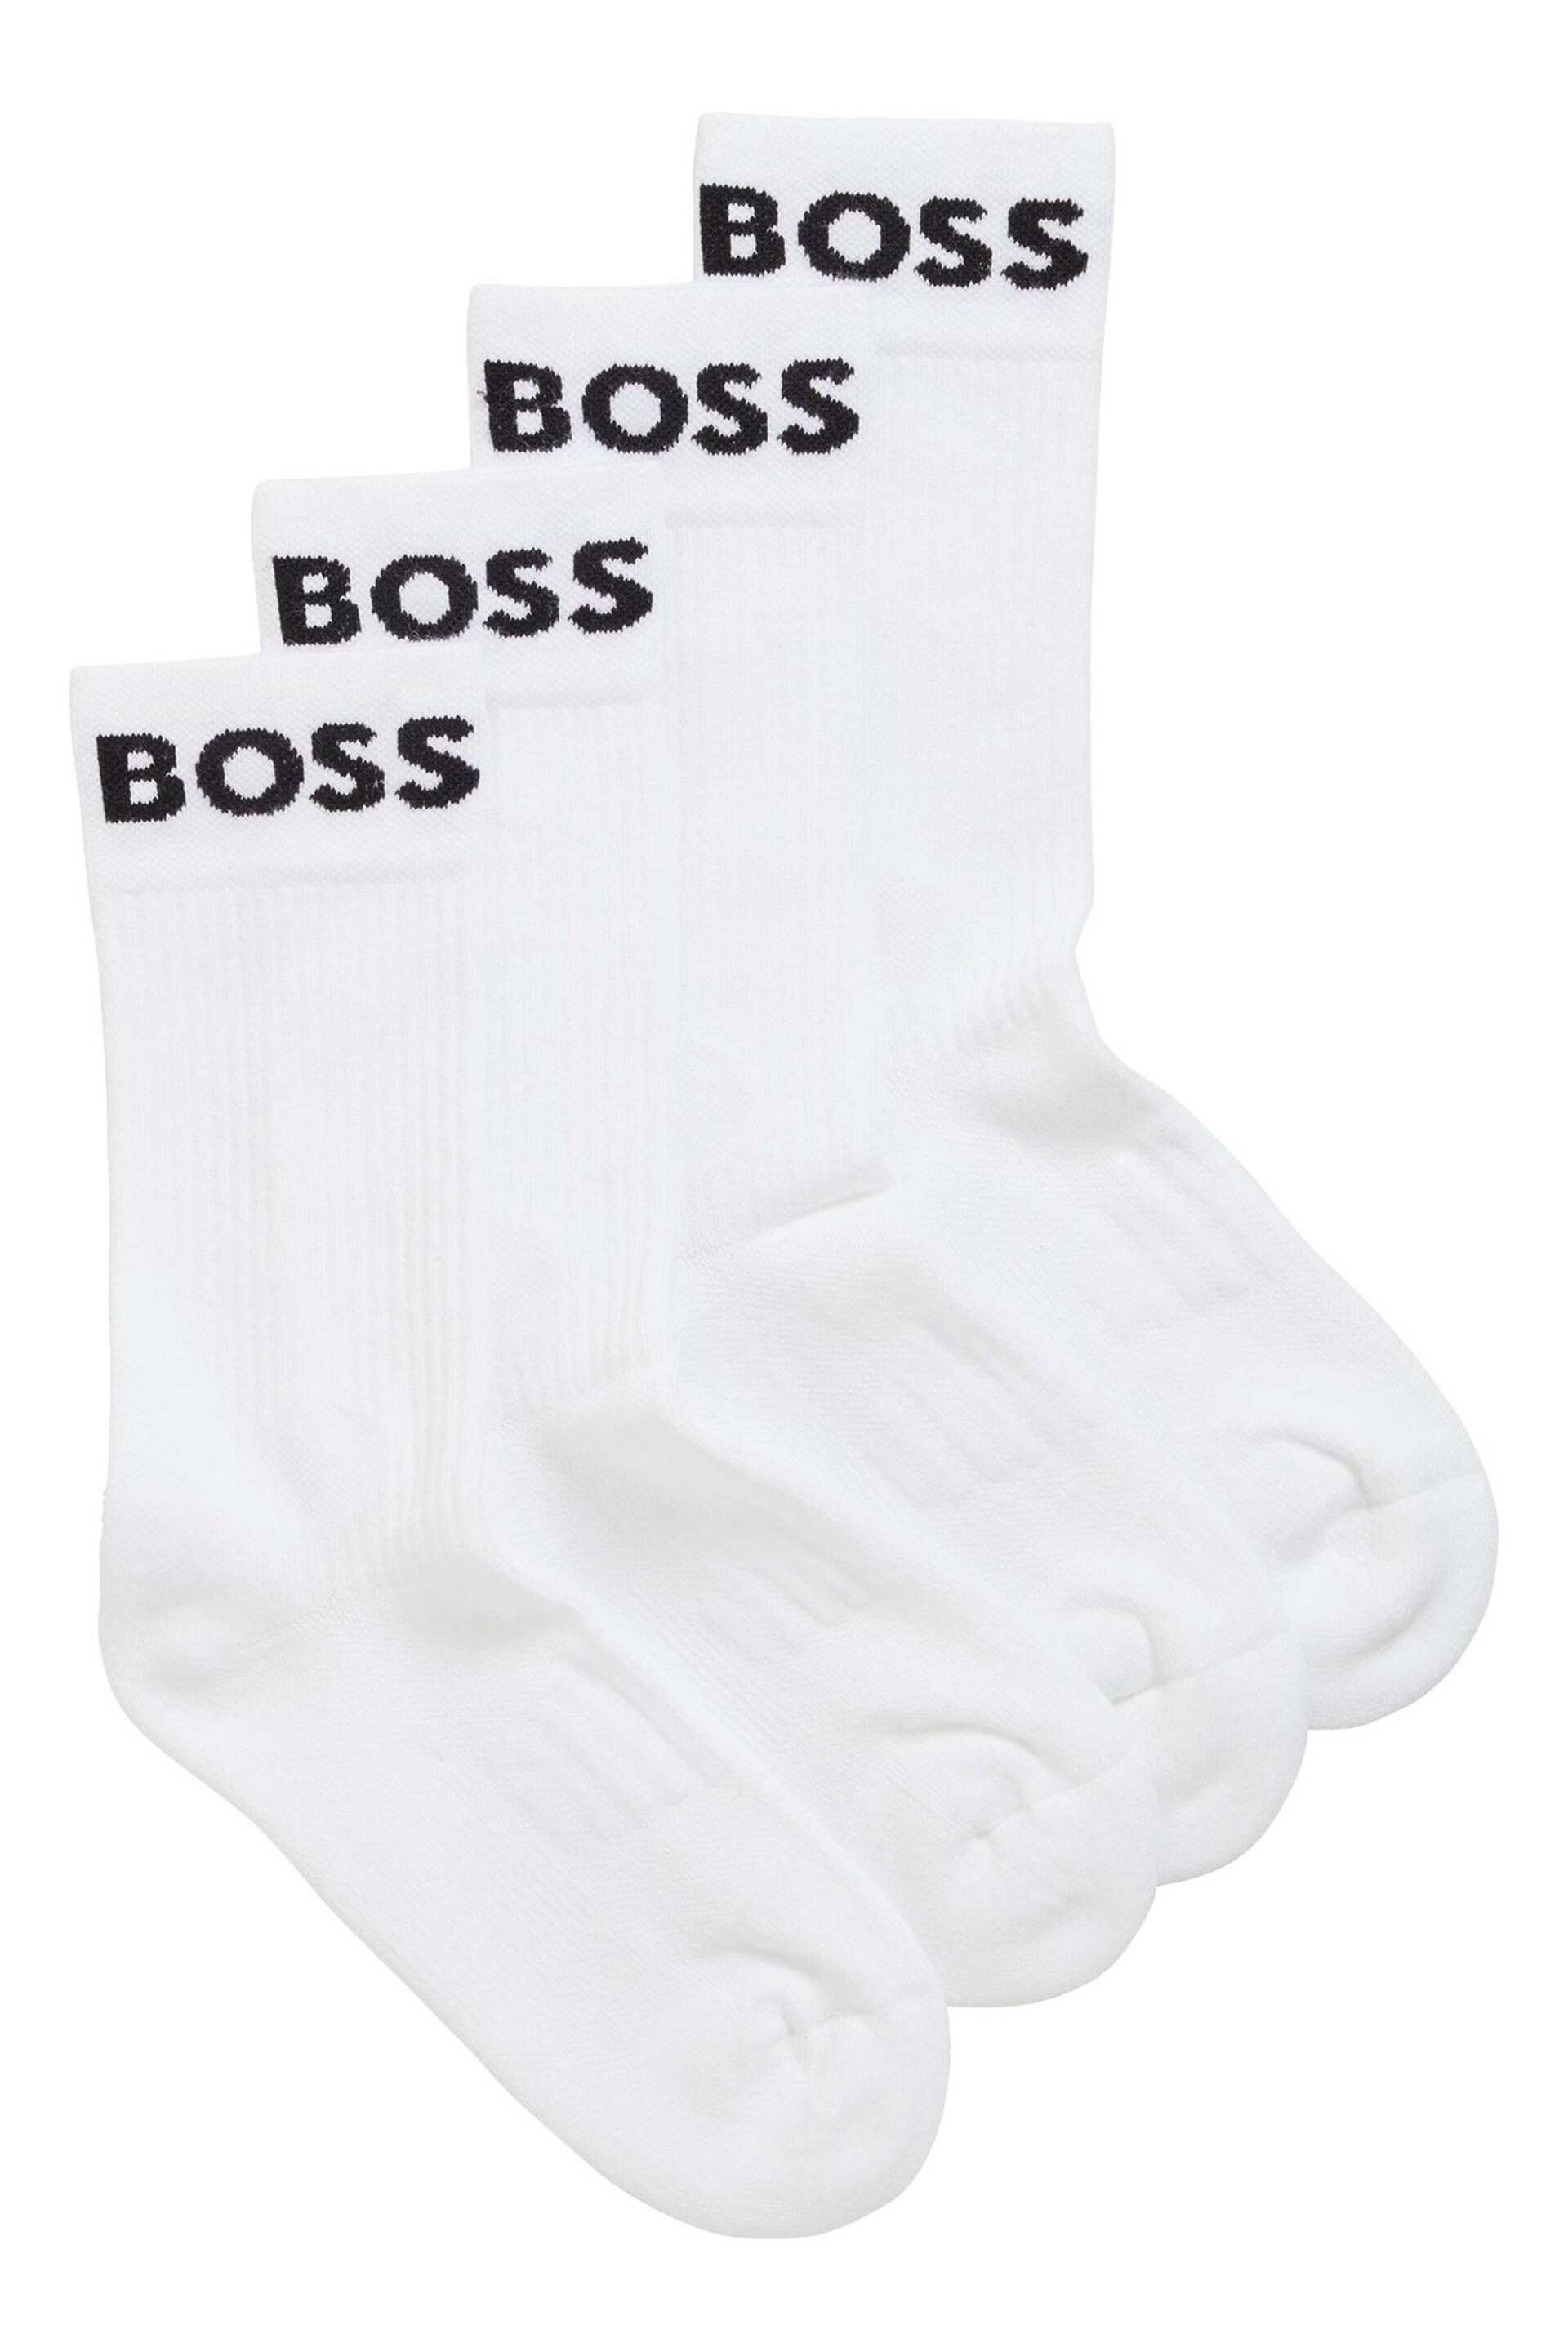 BOSS White Sport Socks 2 Pack - Image 1 of 5